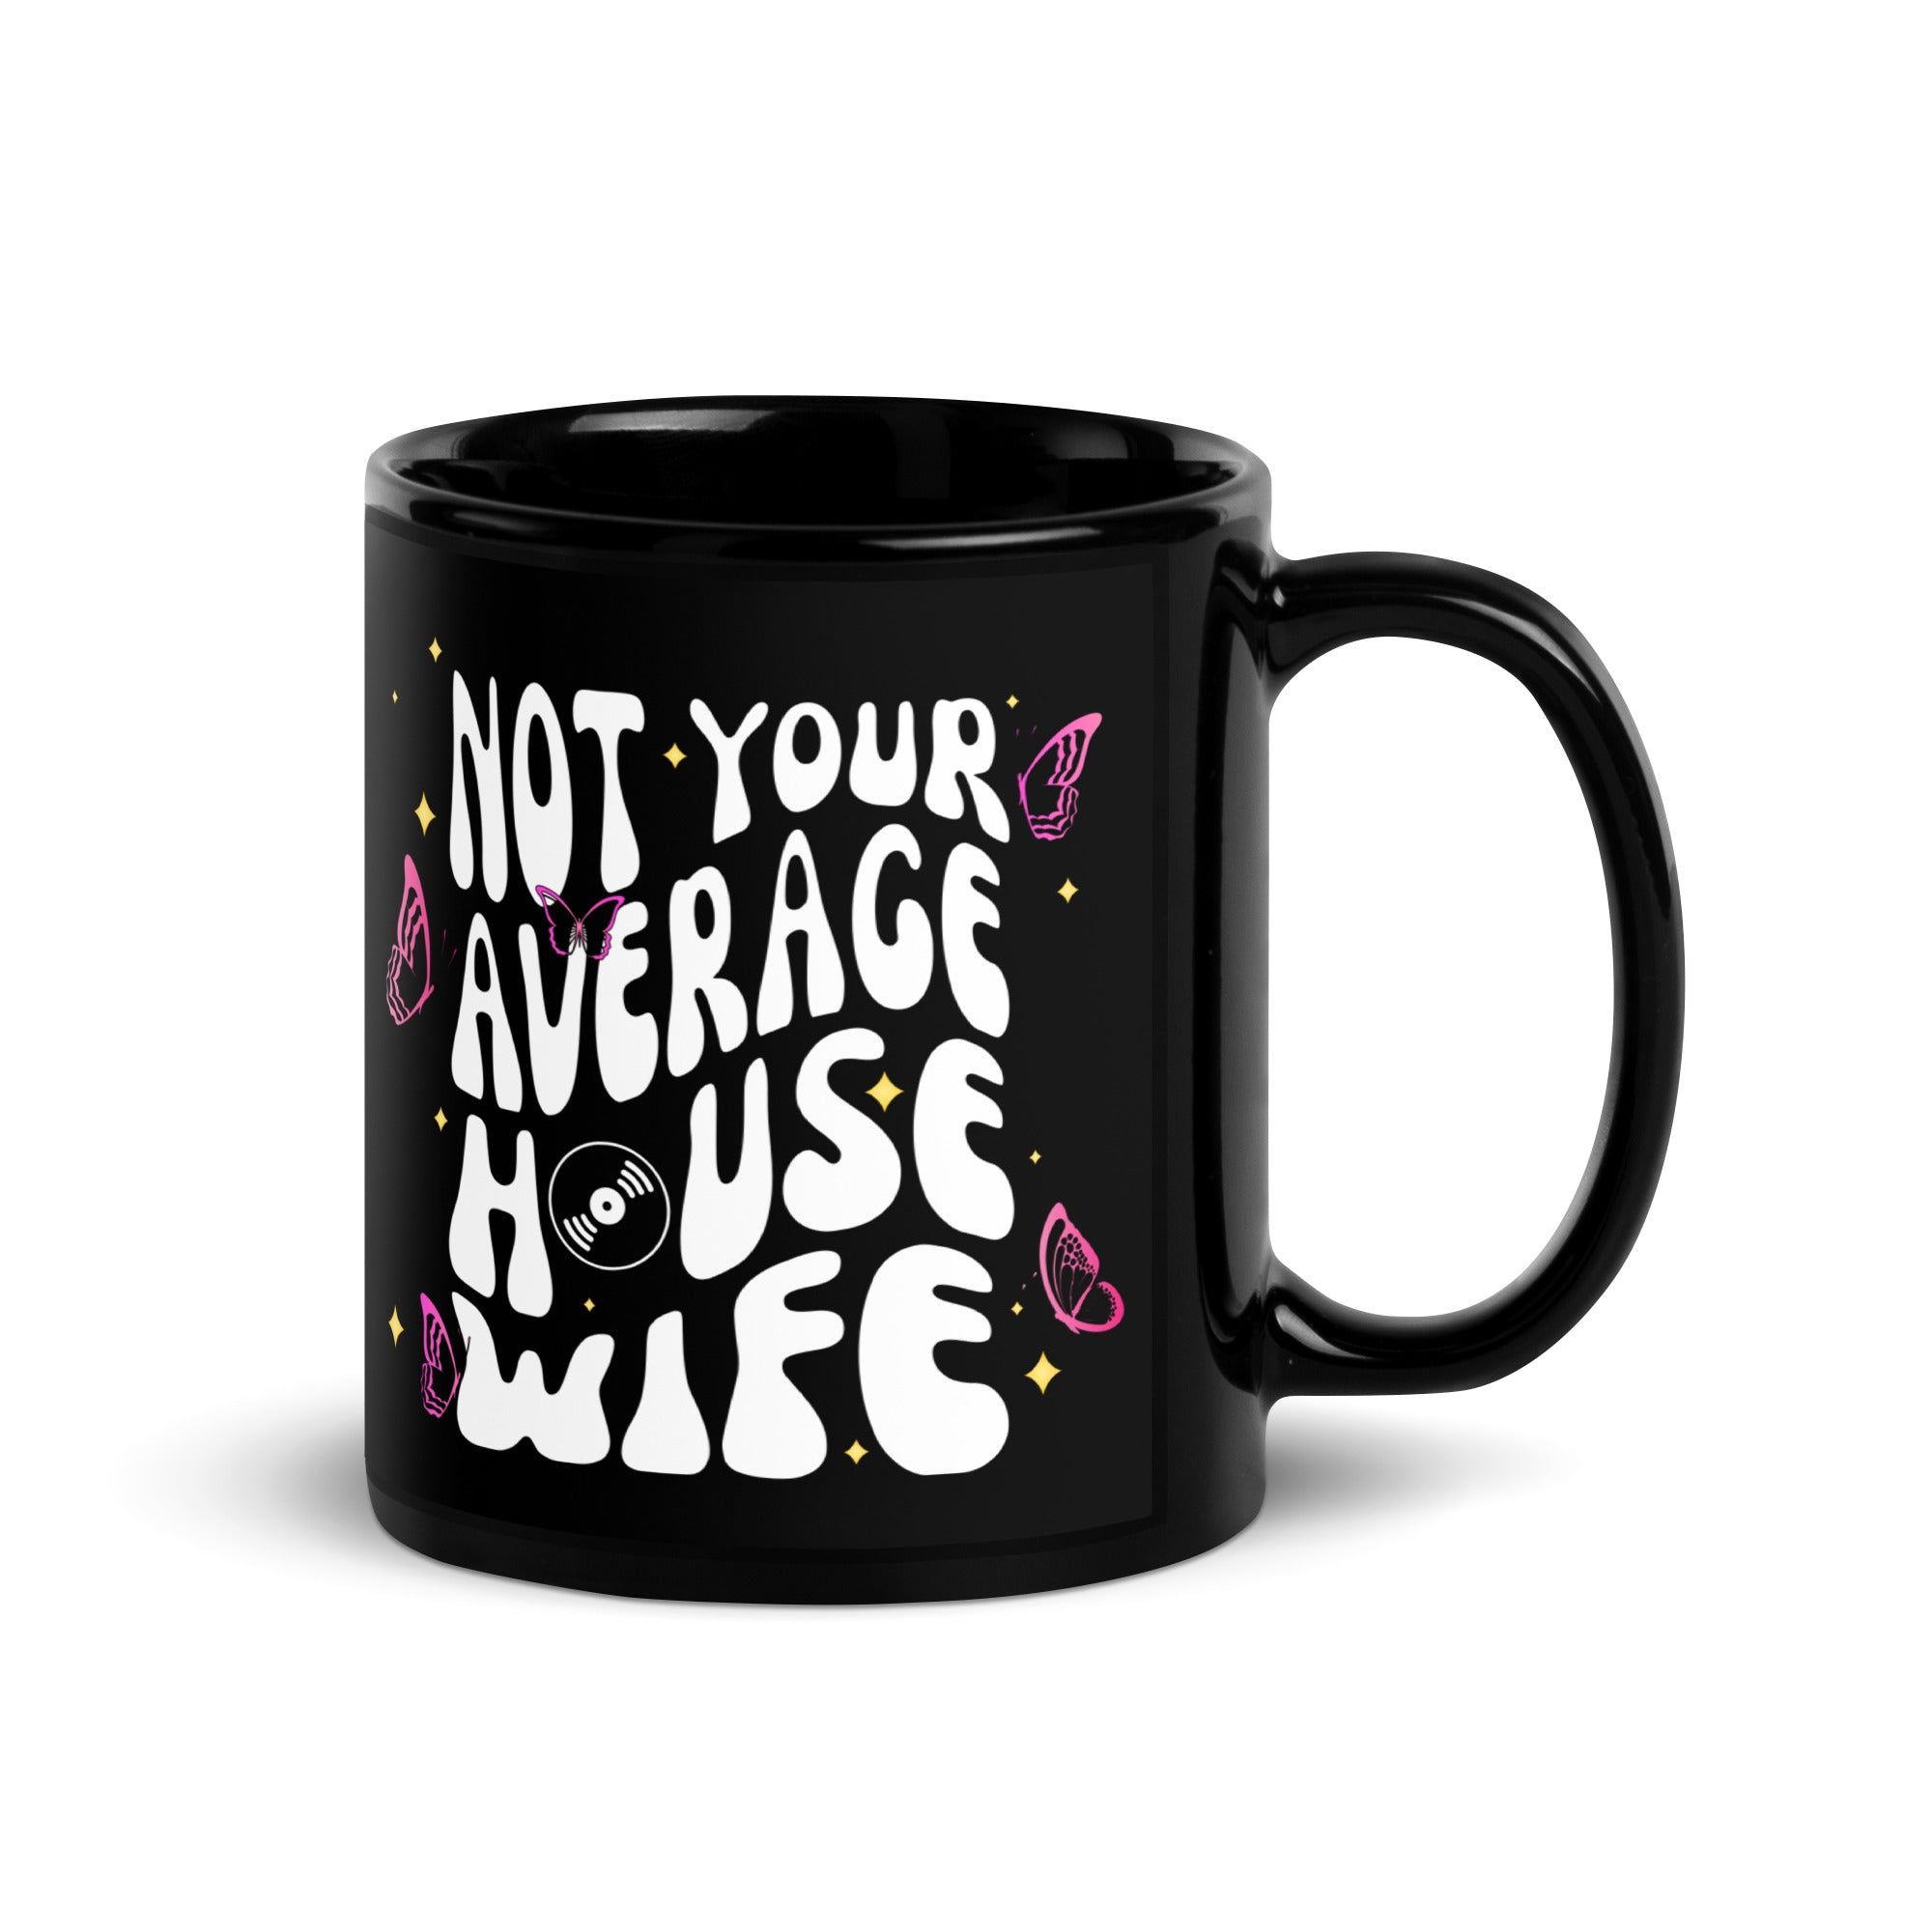 Not Your Average House Wife Mug